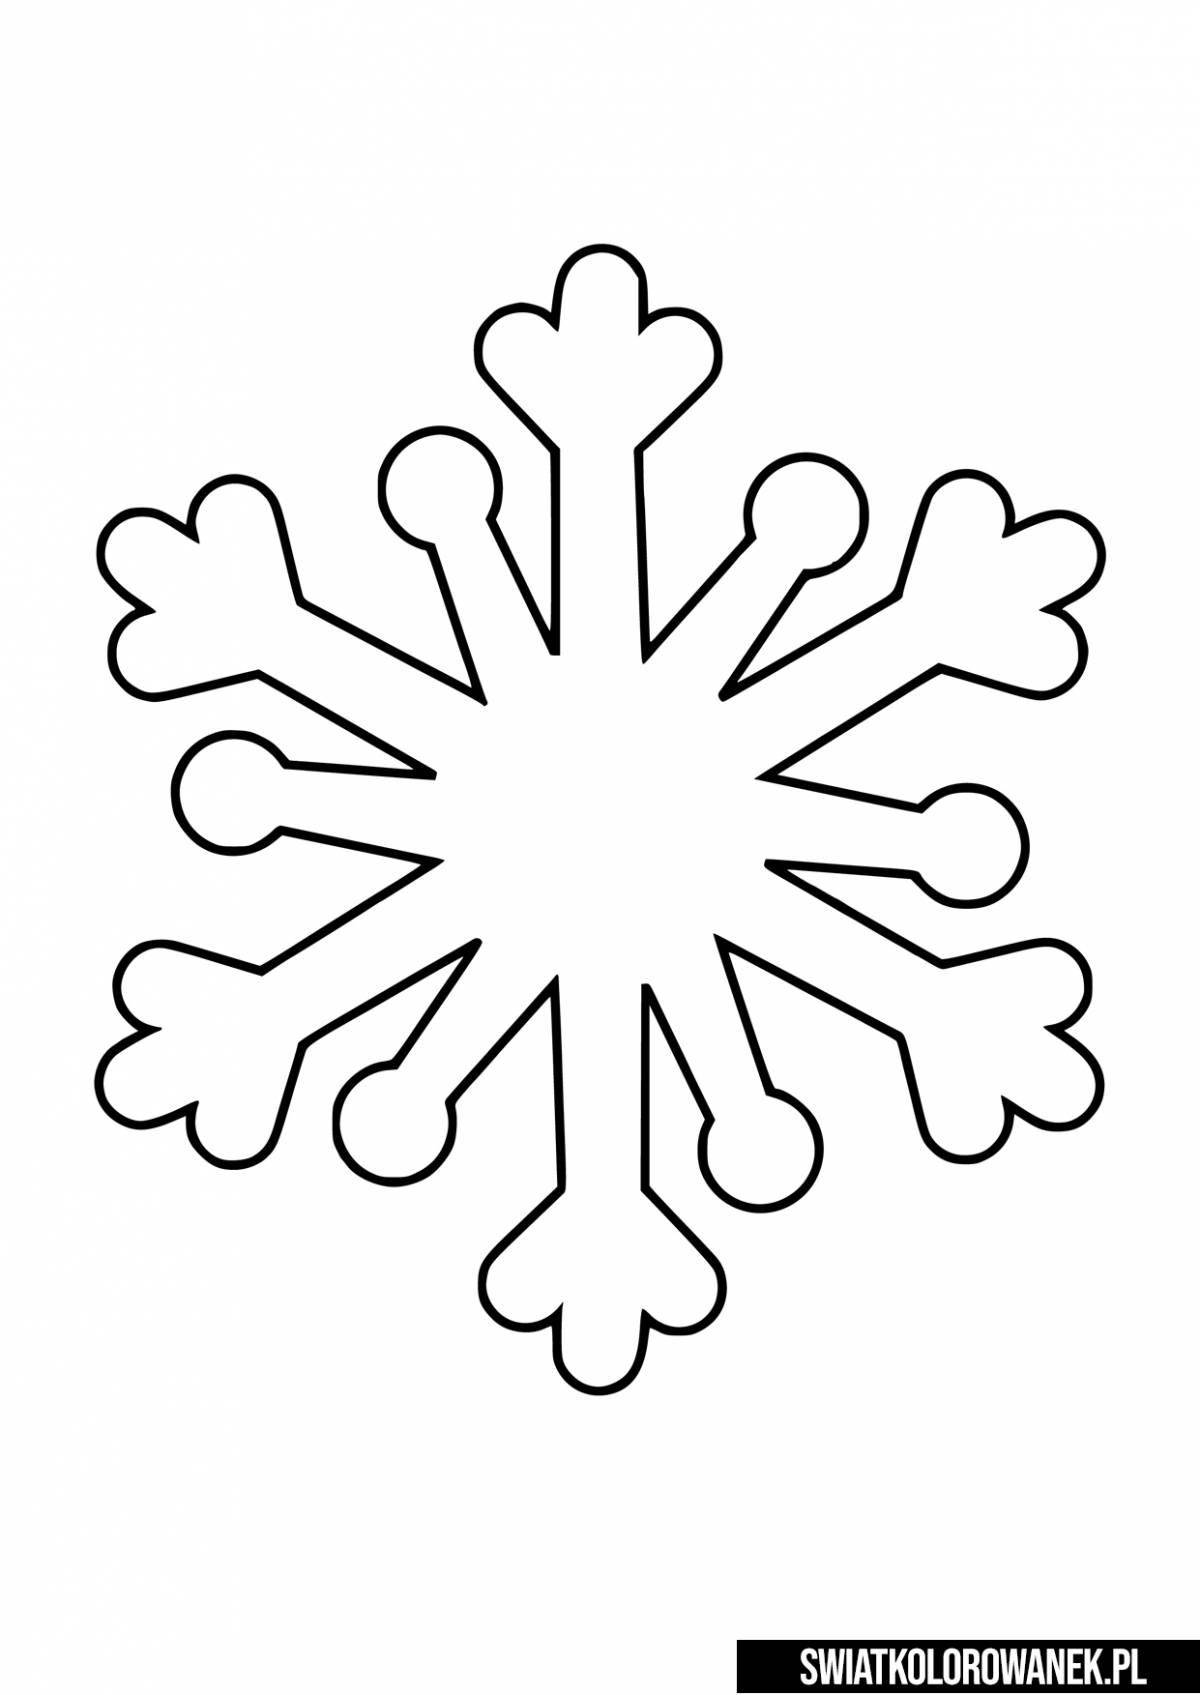 Яркая раскраска снежинки для детей 4-5 лет в детском саду